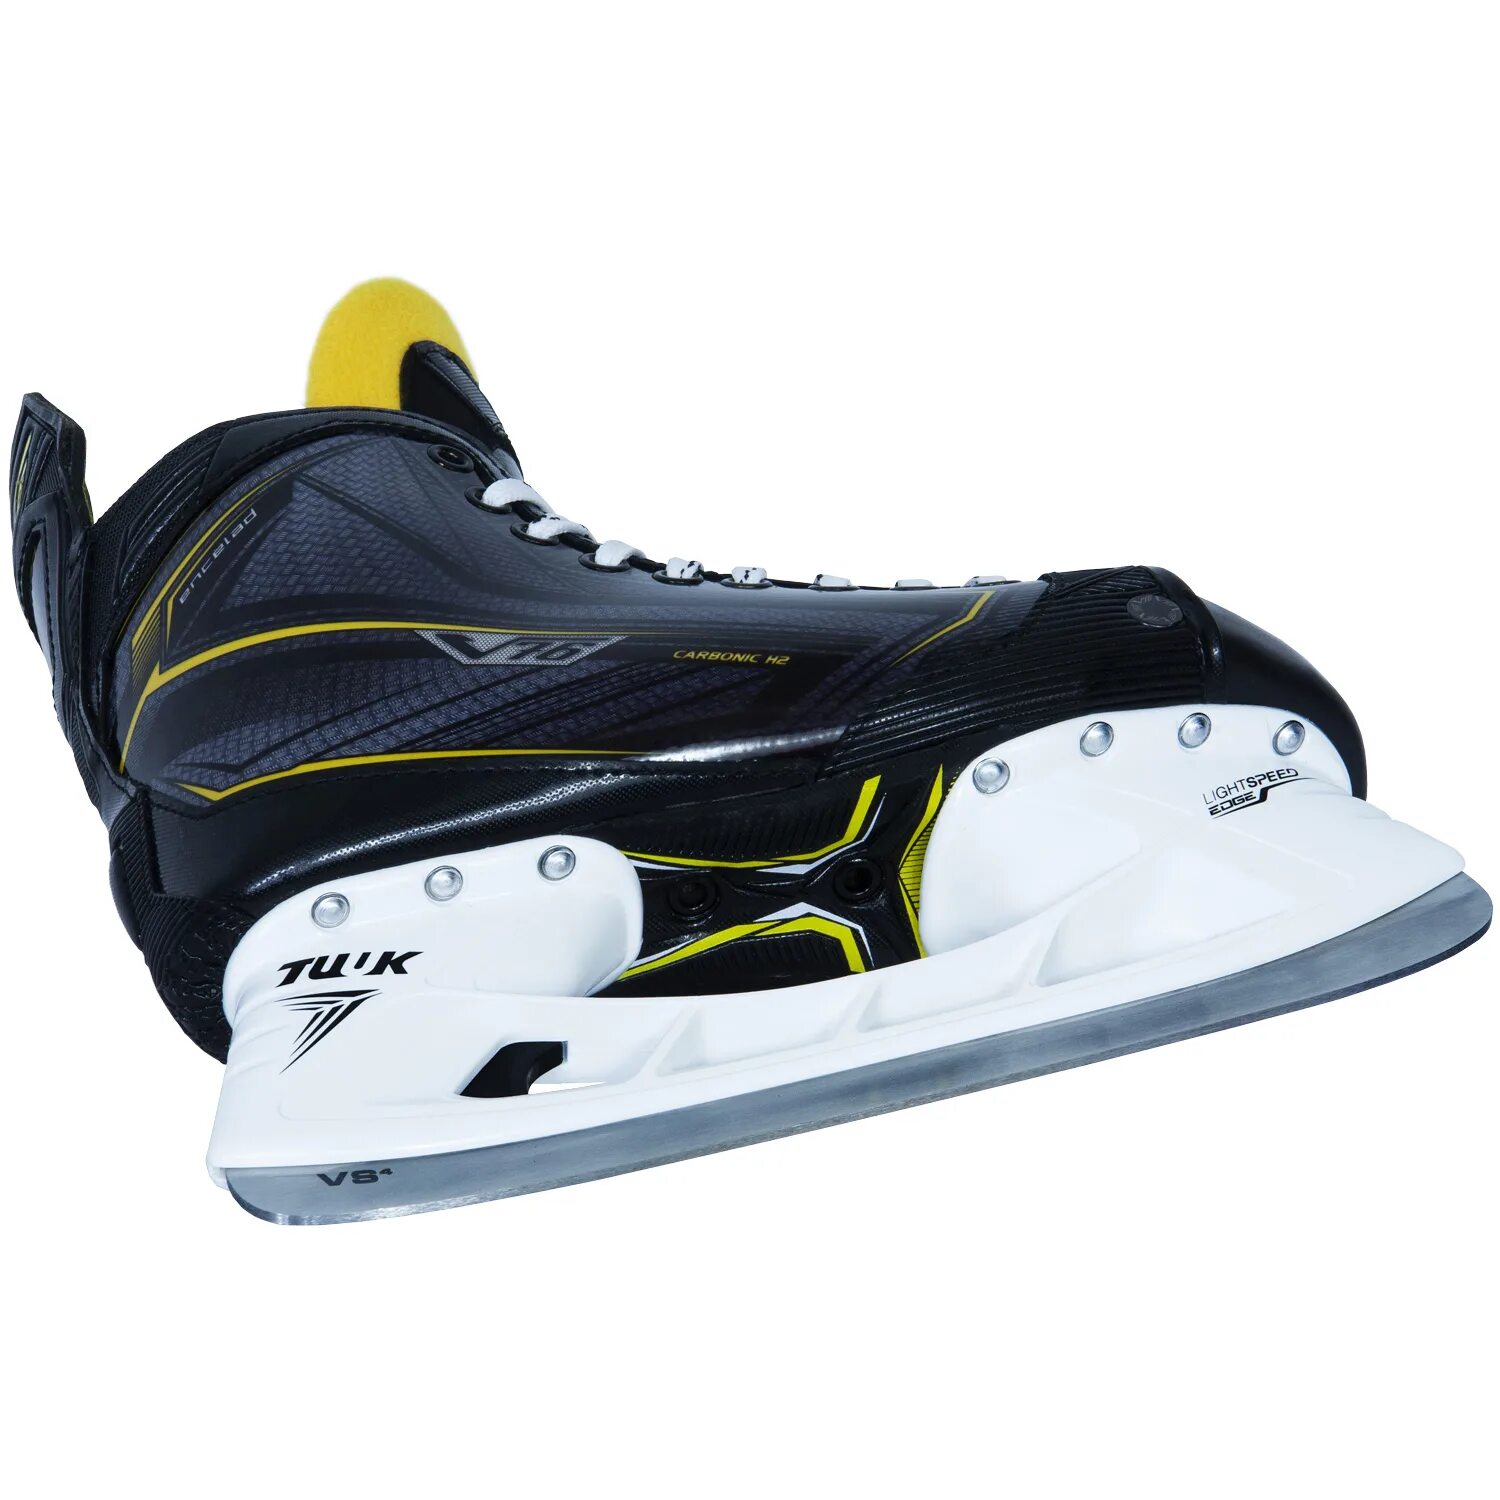 Коньки v76 encelad. Хоккейные коньки v76 Lux-s. Хоккейные коньки v76 Lux Pro z. Ярославский коньки v76 encelad.